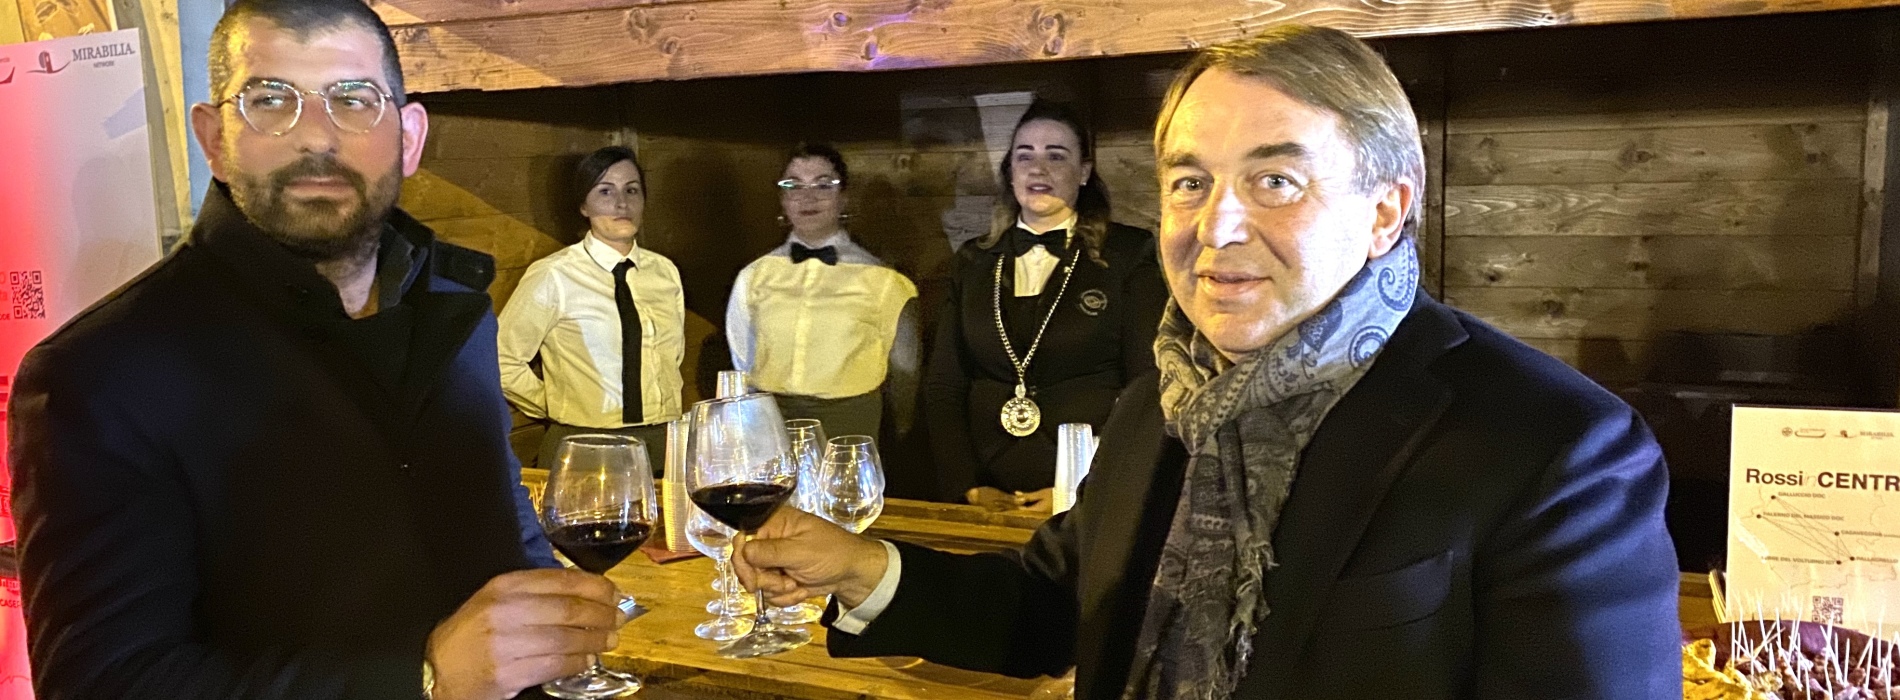 Rossi in Centro, a Caserta protagonisti i vini di Terra di Lavoro